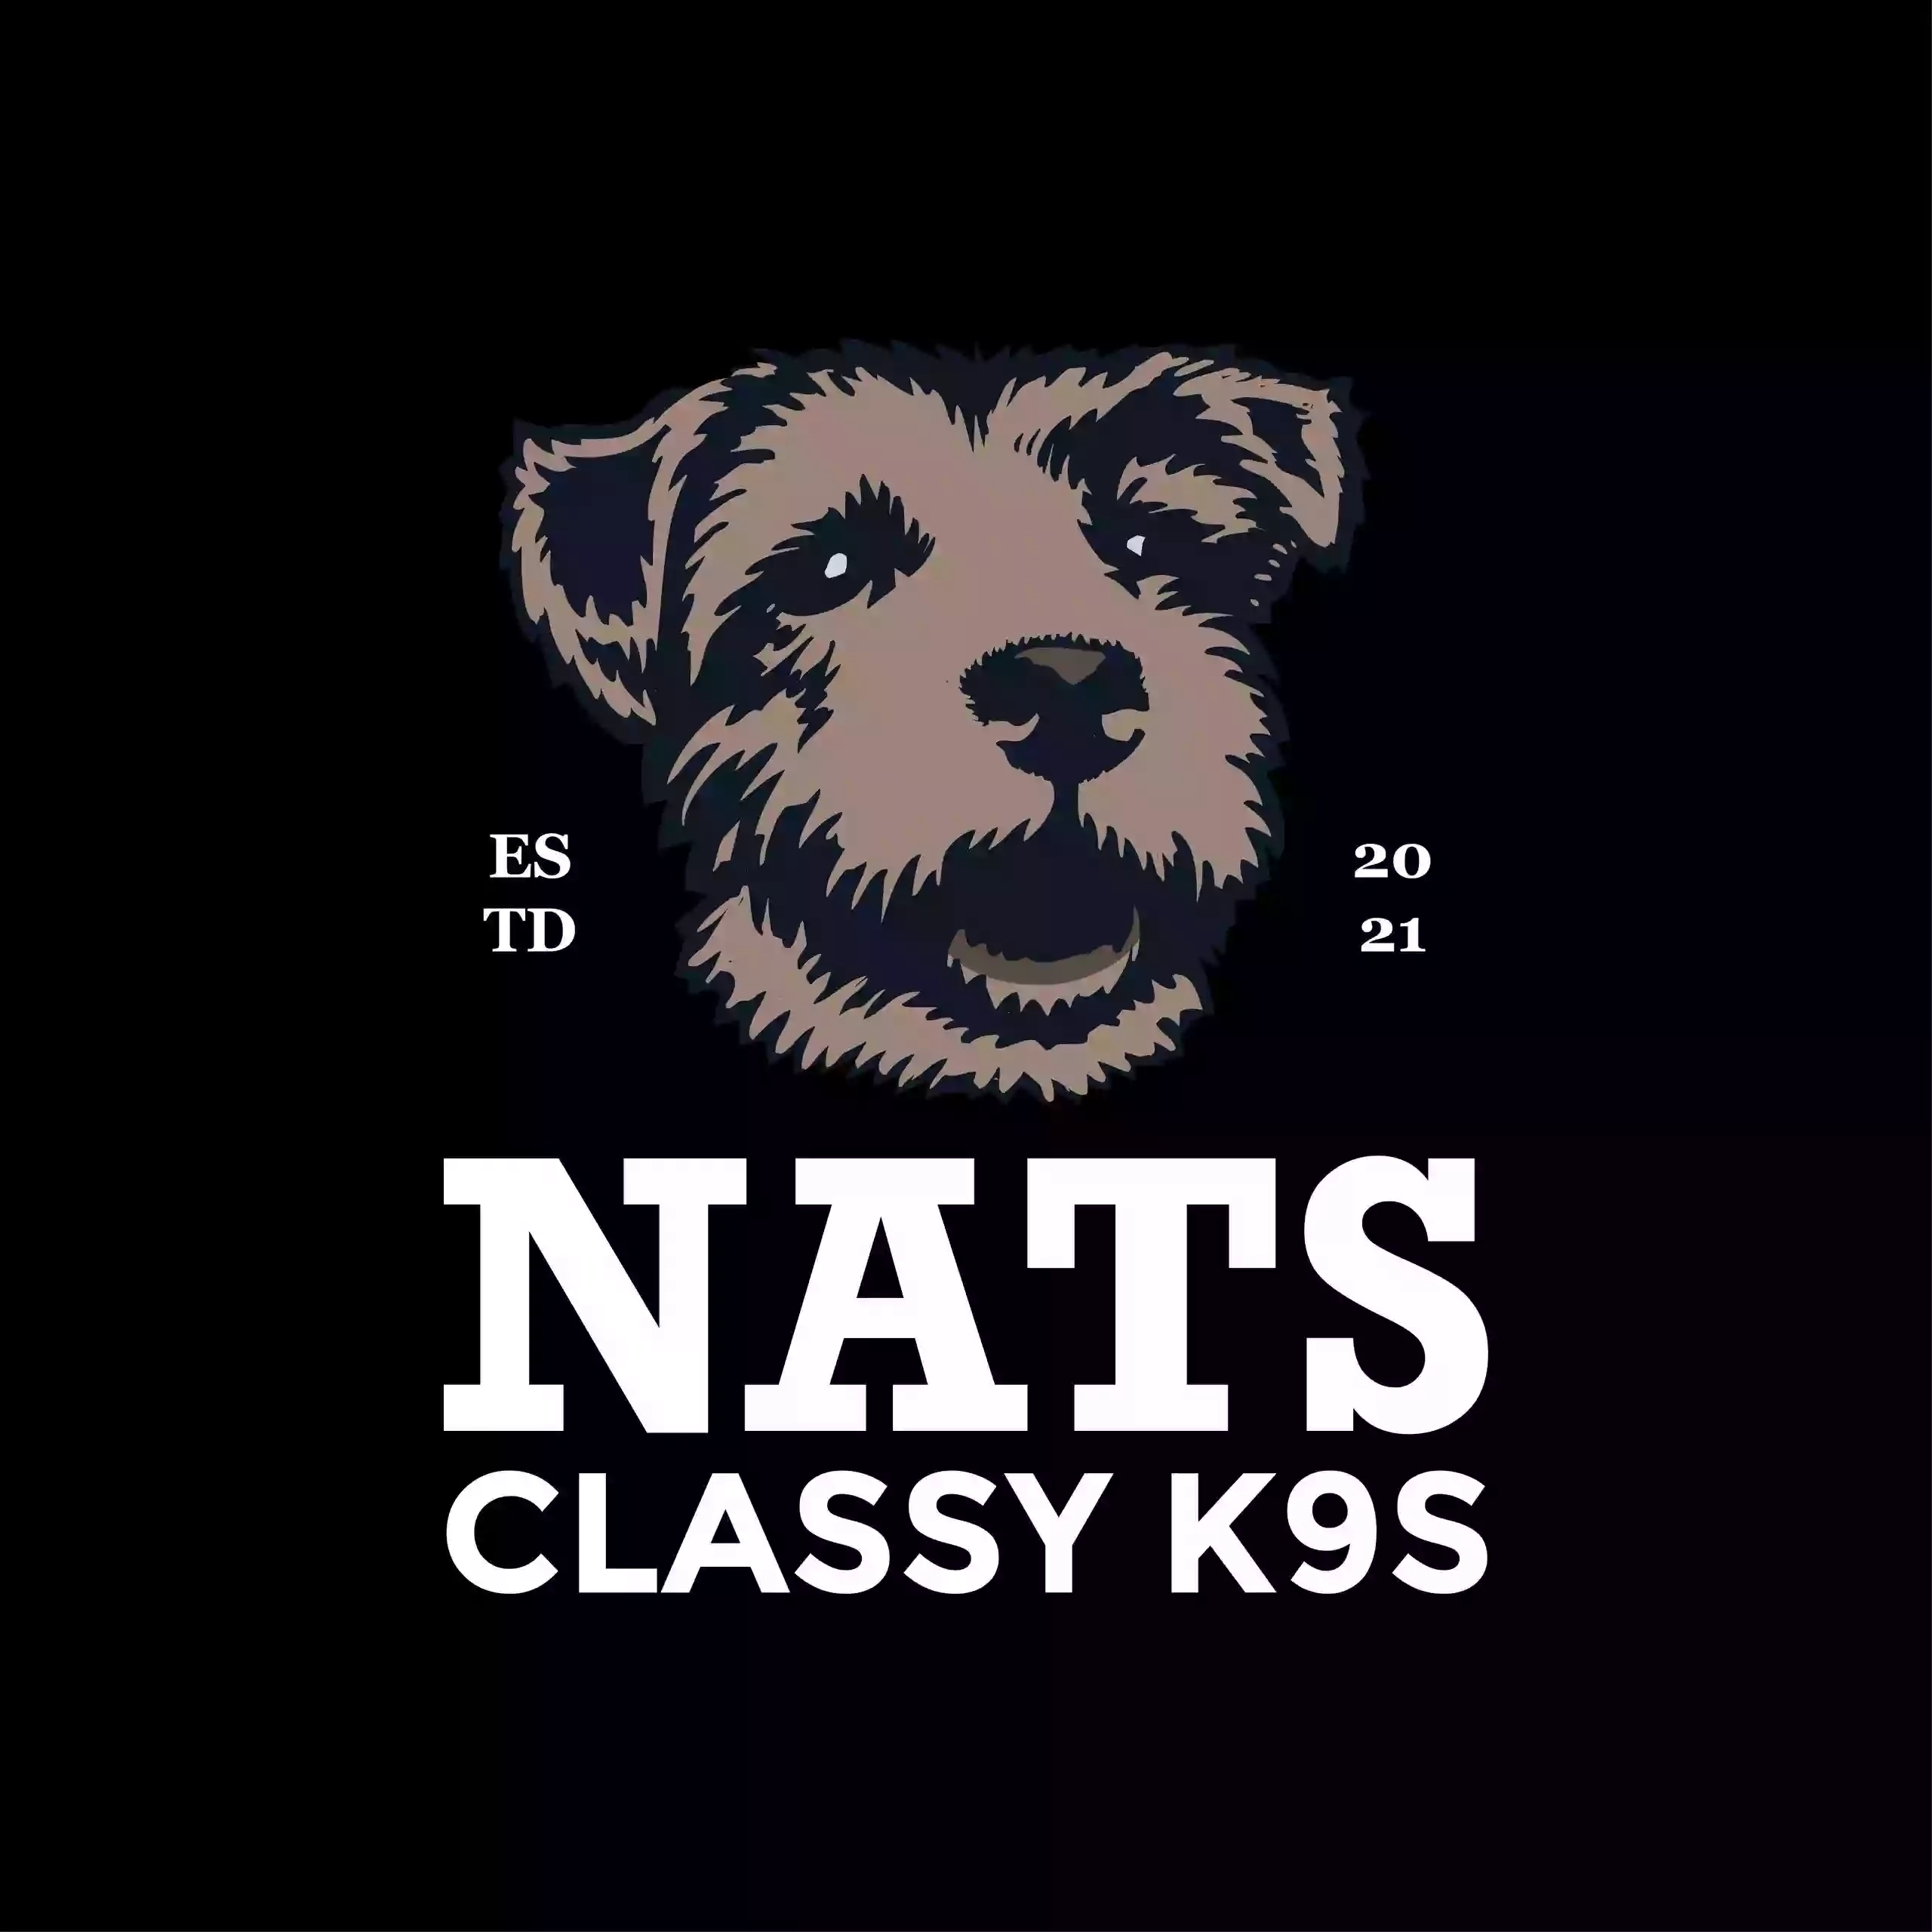 Nats Classy K9s